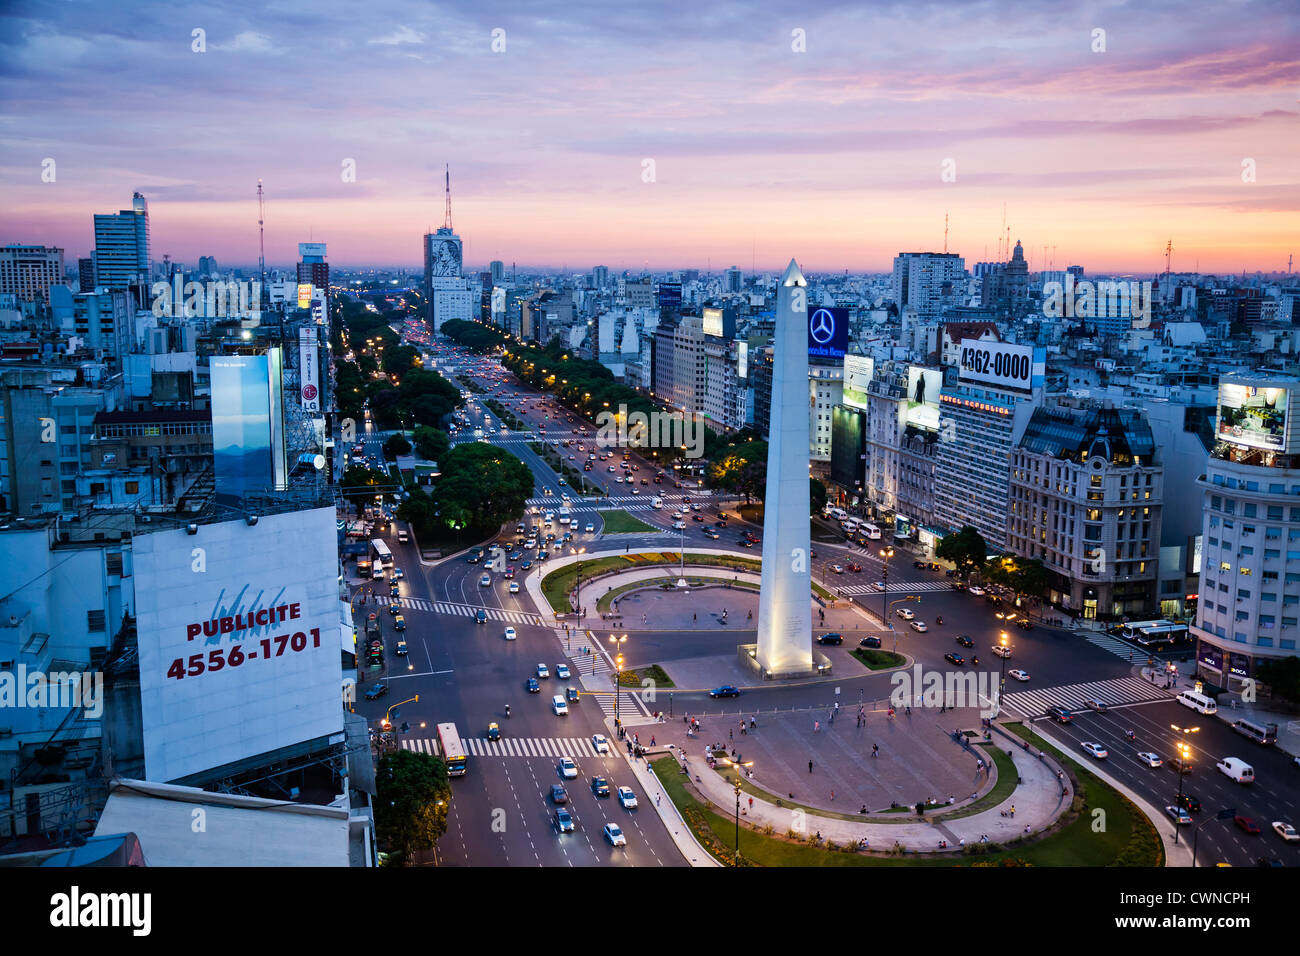 Blick über Avenida 9 Julio und der Obelisk im Plaza Republica, Buenos Aires, Argentinien. Stockfoto